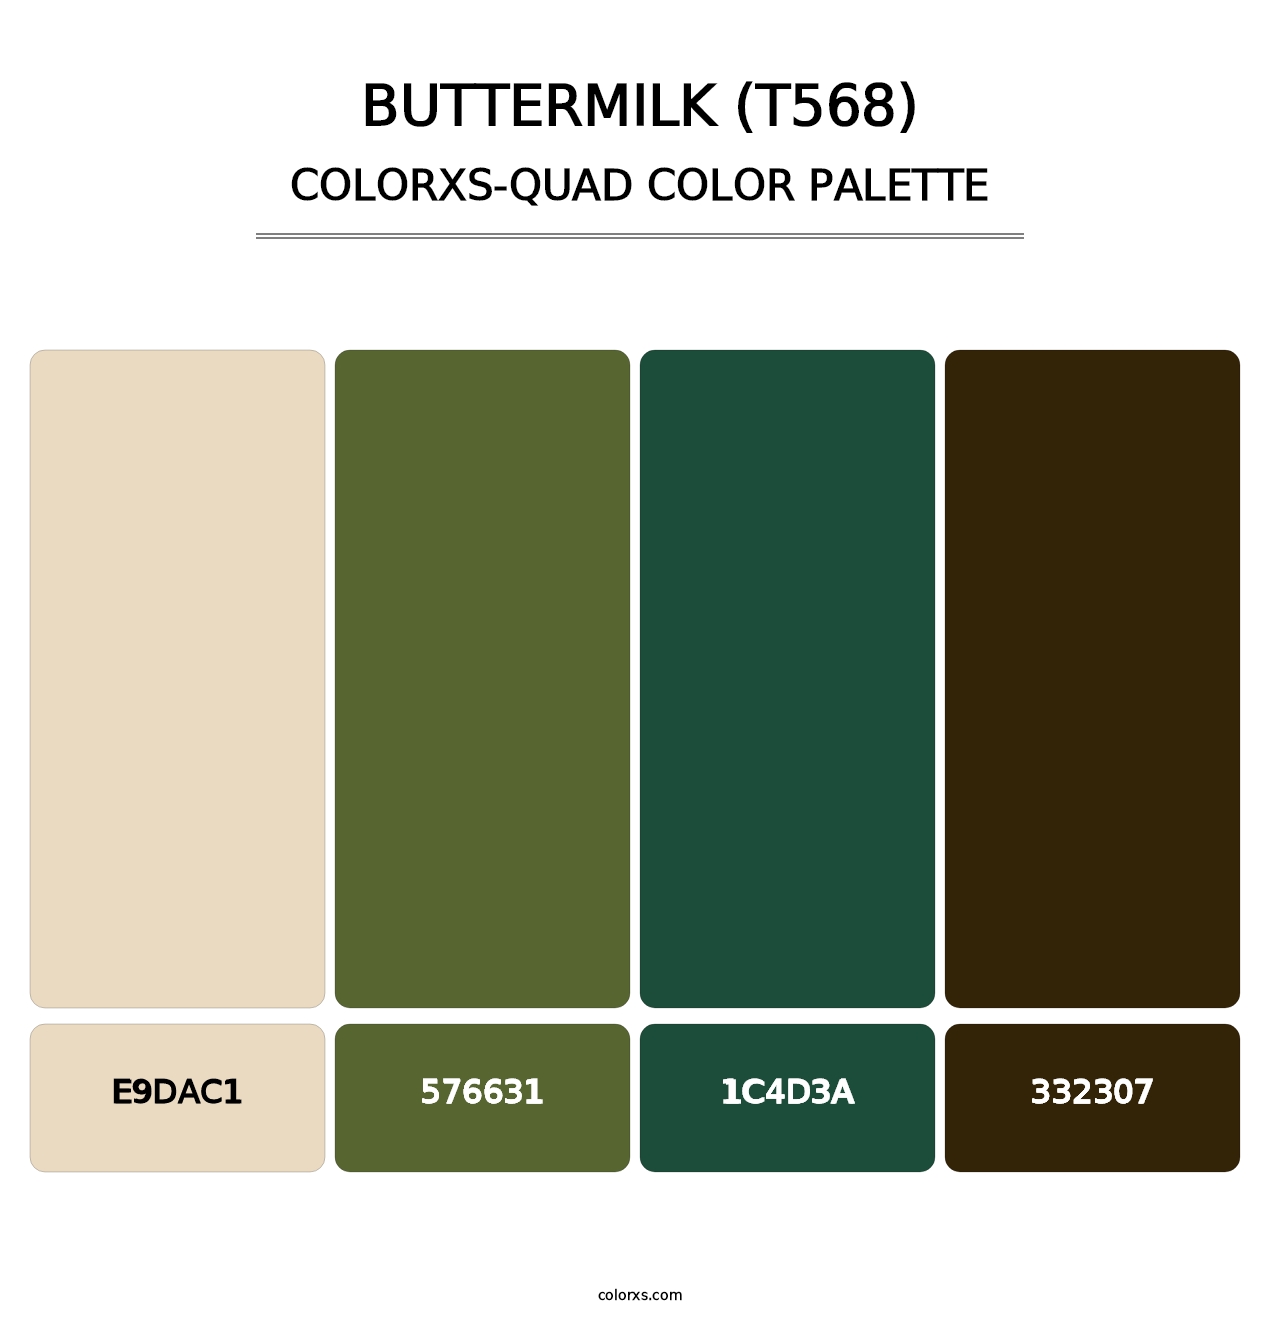 Buttermilk (T568) - Colorxs Quad Palette